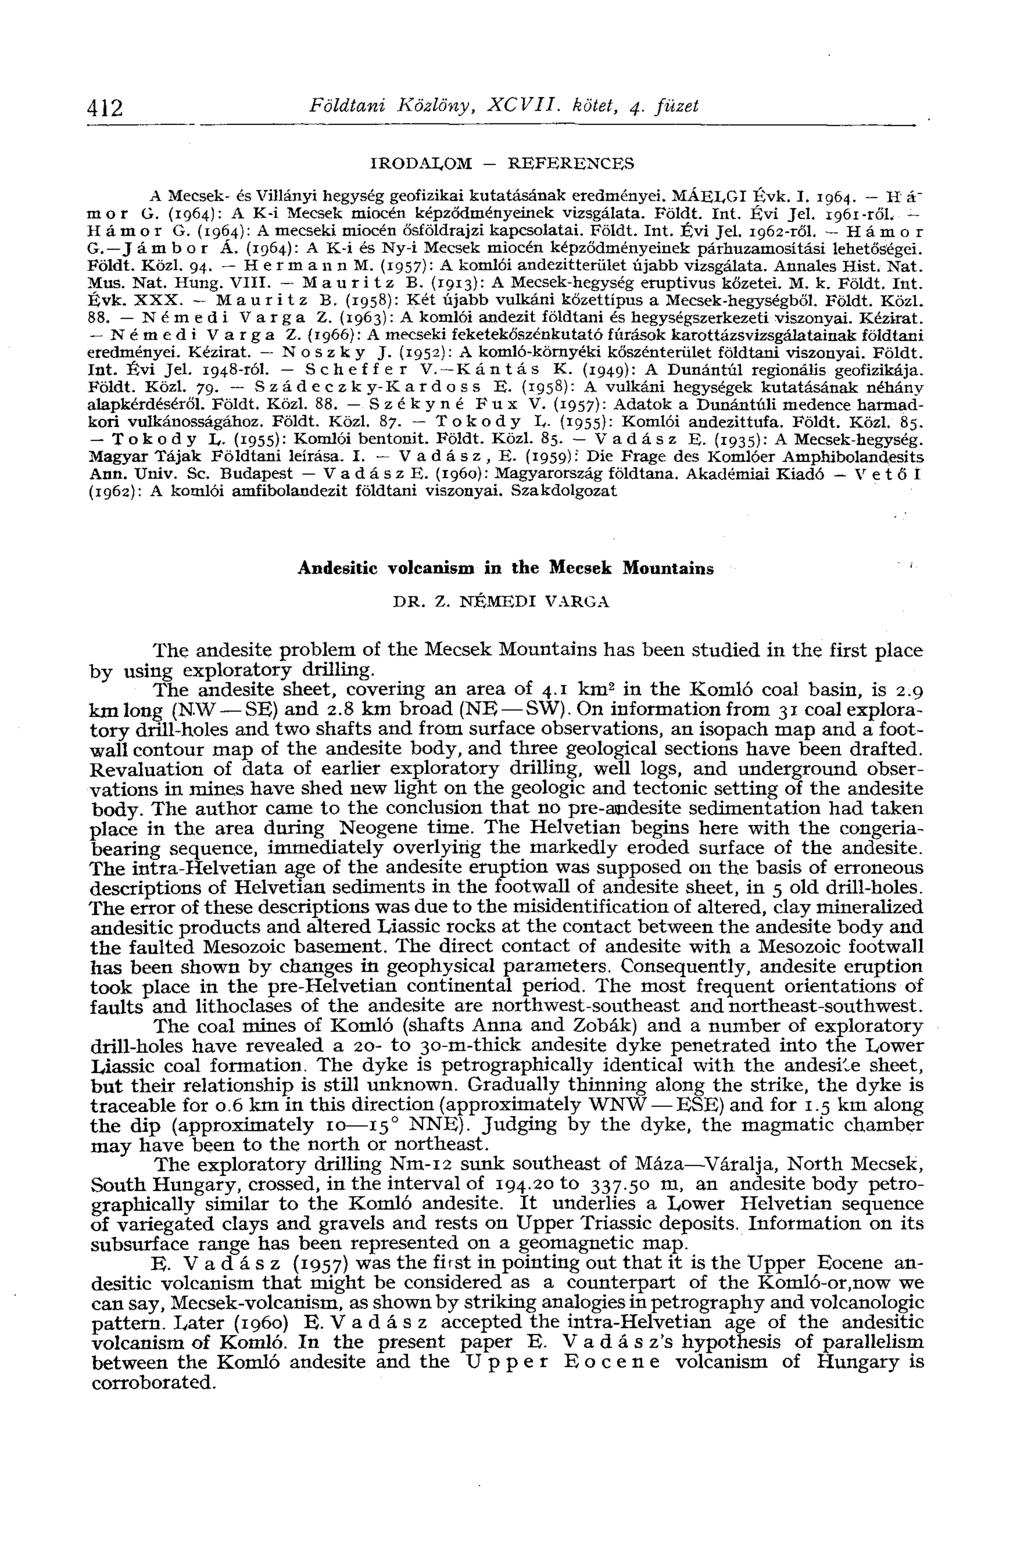 412 Földtani Közlöny, XCVII. kötet, 4. füzet IRODALOM - REFERENCES A Mecsek- és Villányi hegység geofizikai kutatásának eredményei. MÁELGI Évk. I. 1964. H á" mor G.